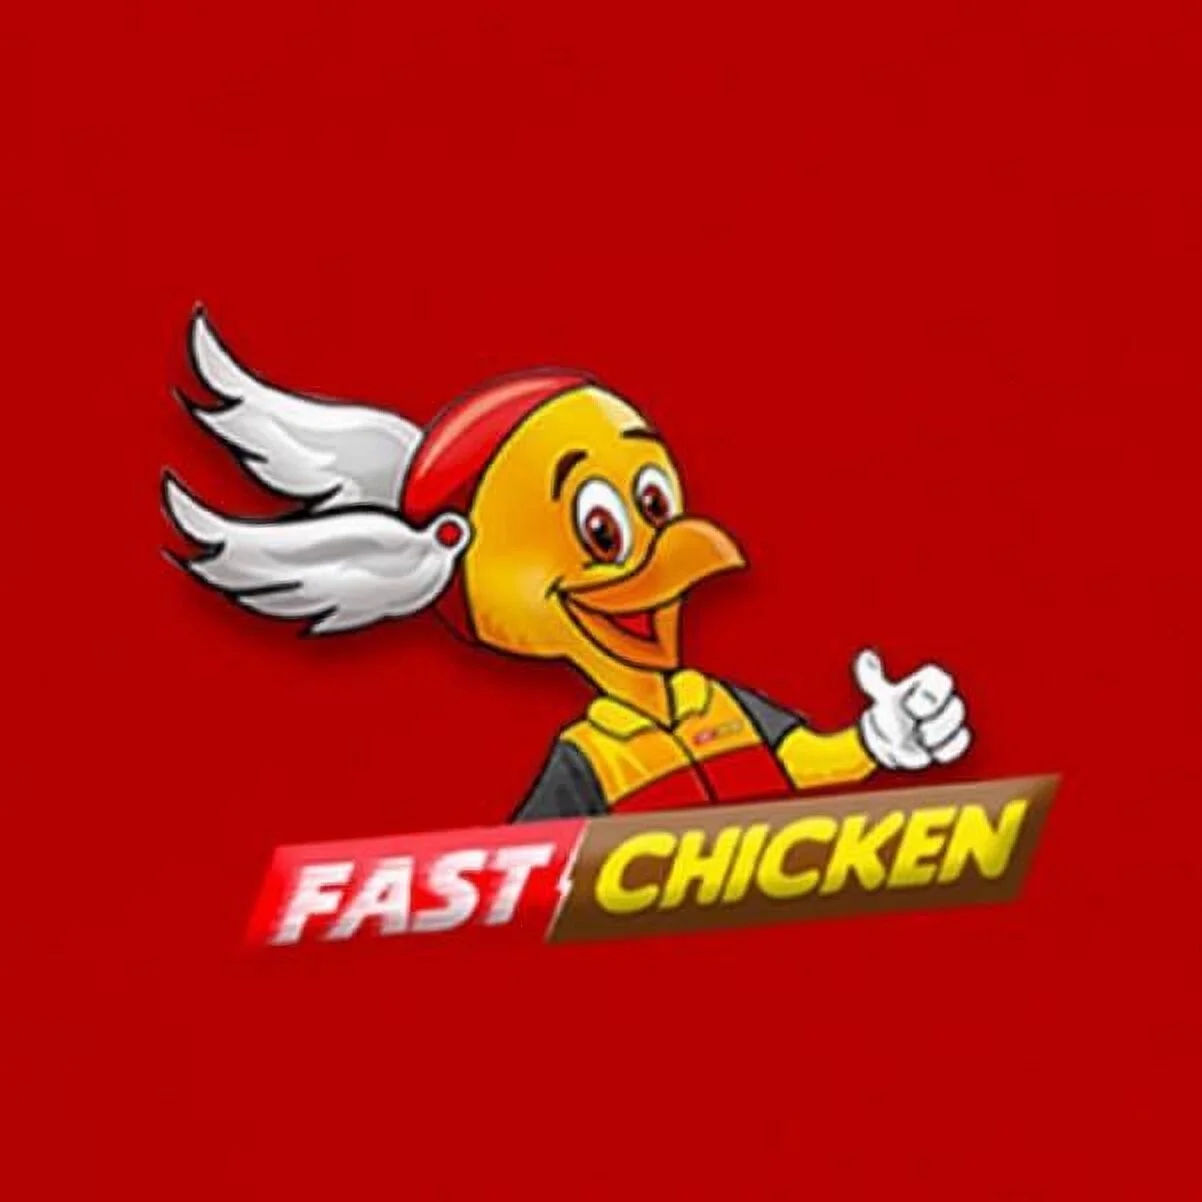 Restaurantes-fast-chicken-18276